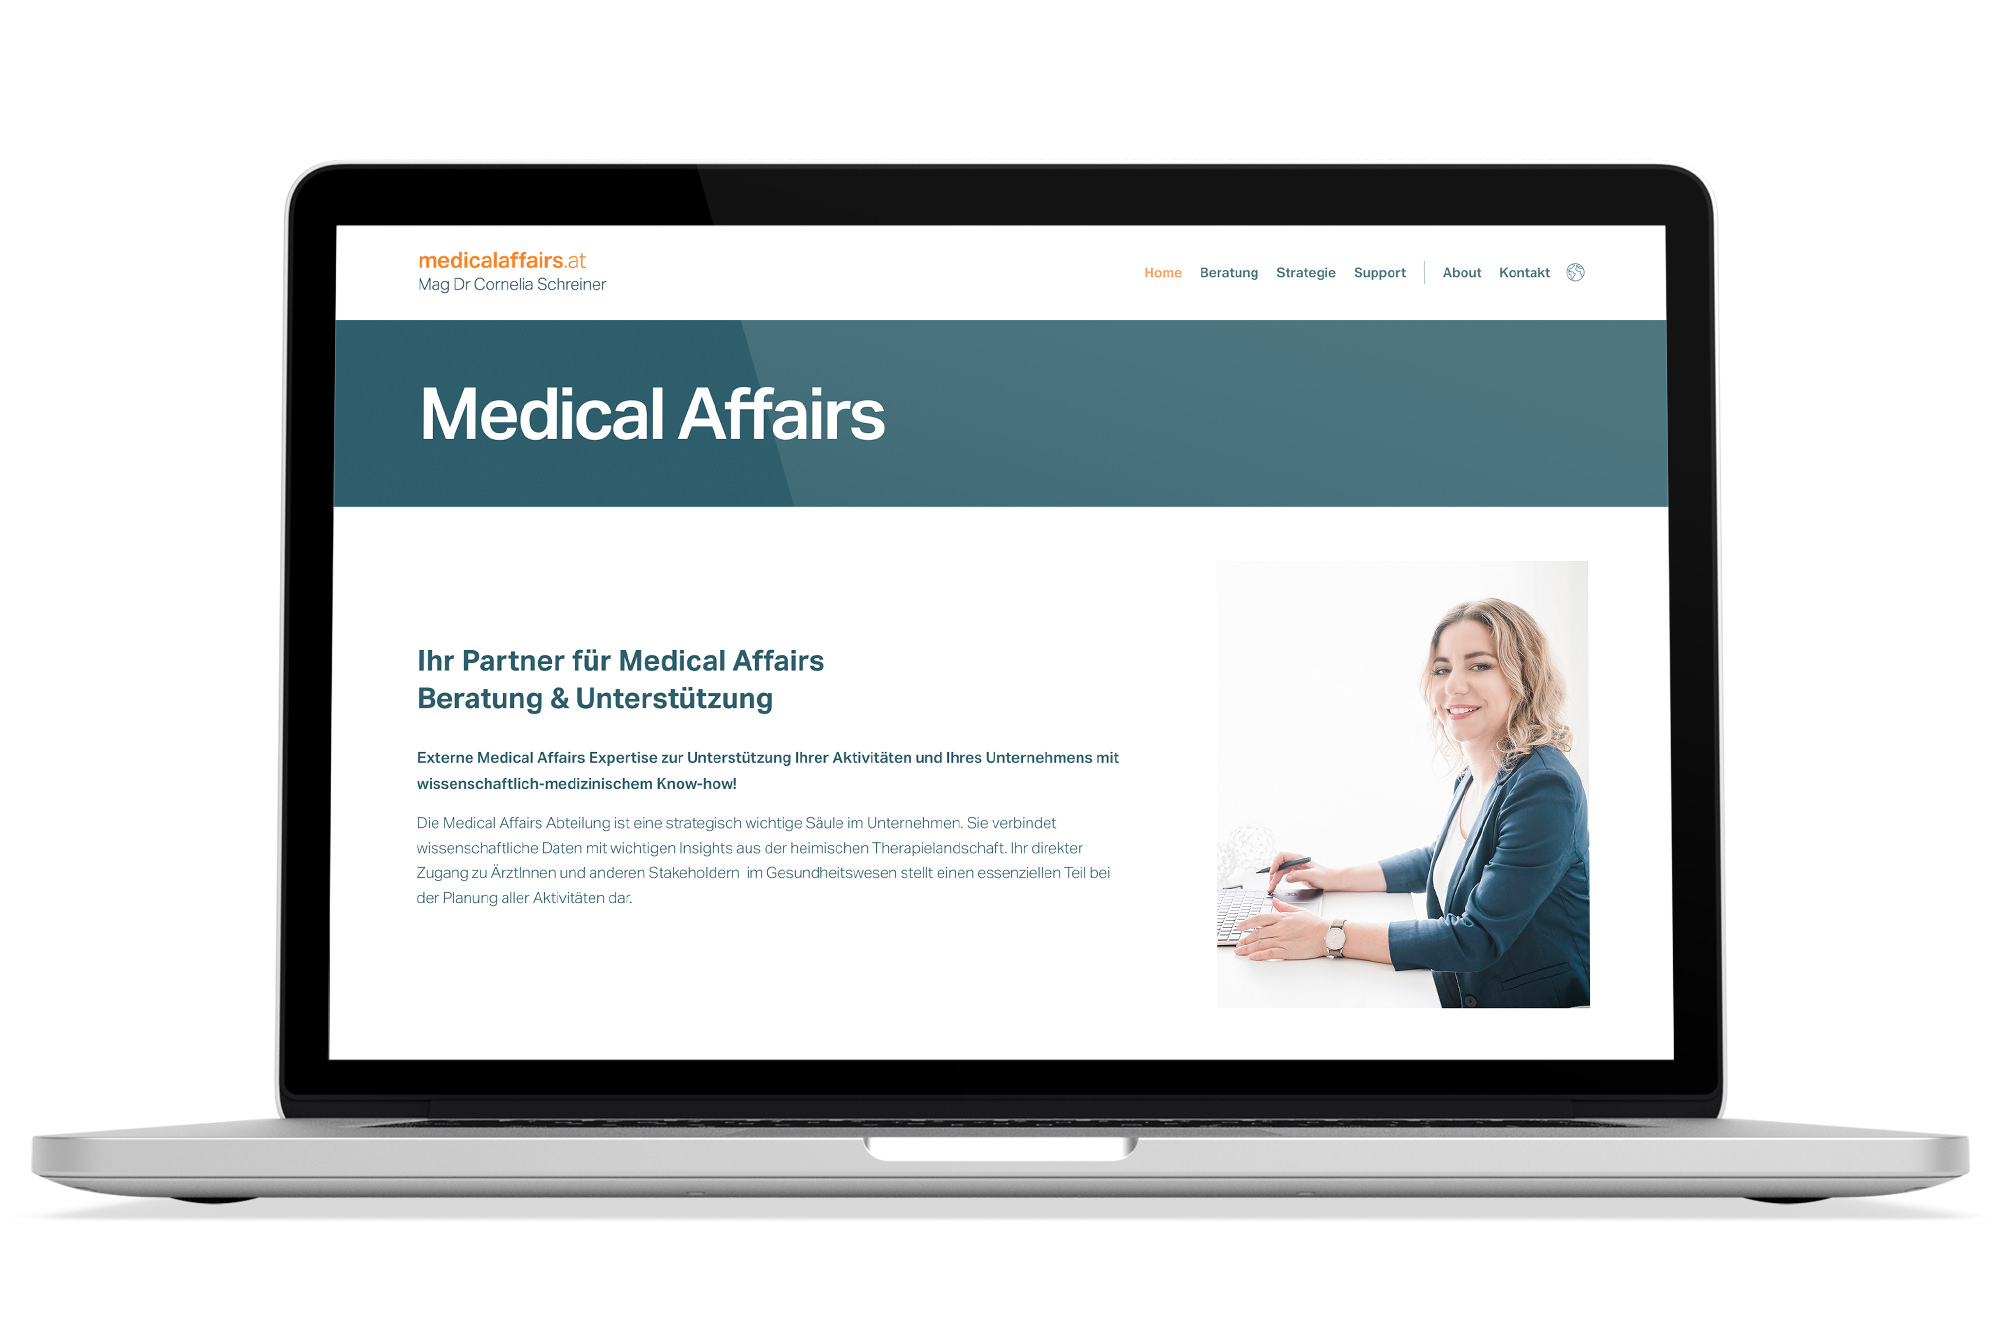 Webdesign Beispiel: Corporate Design, Responsive Webdesign, WordPress für Medizin / Gesundheit